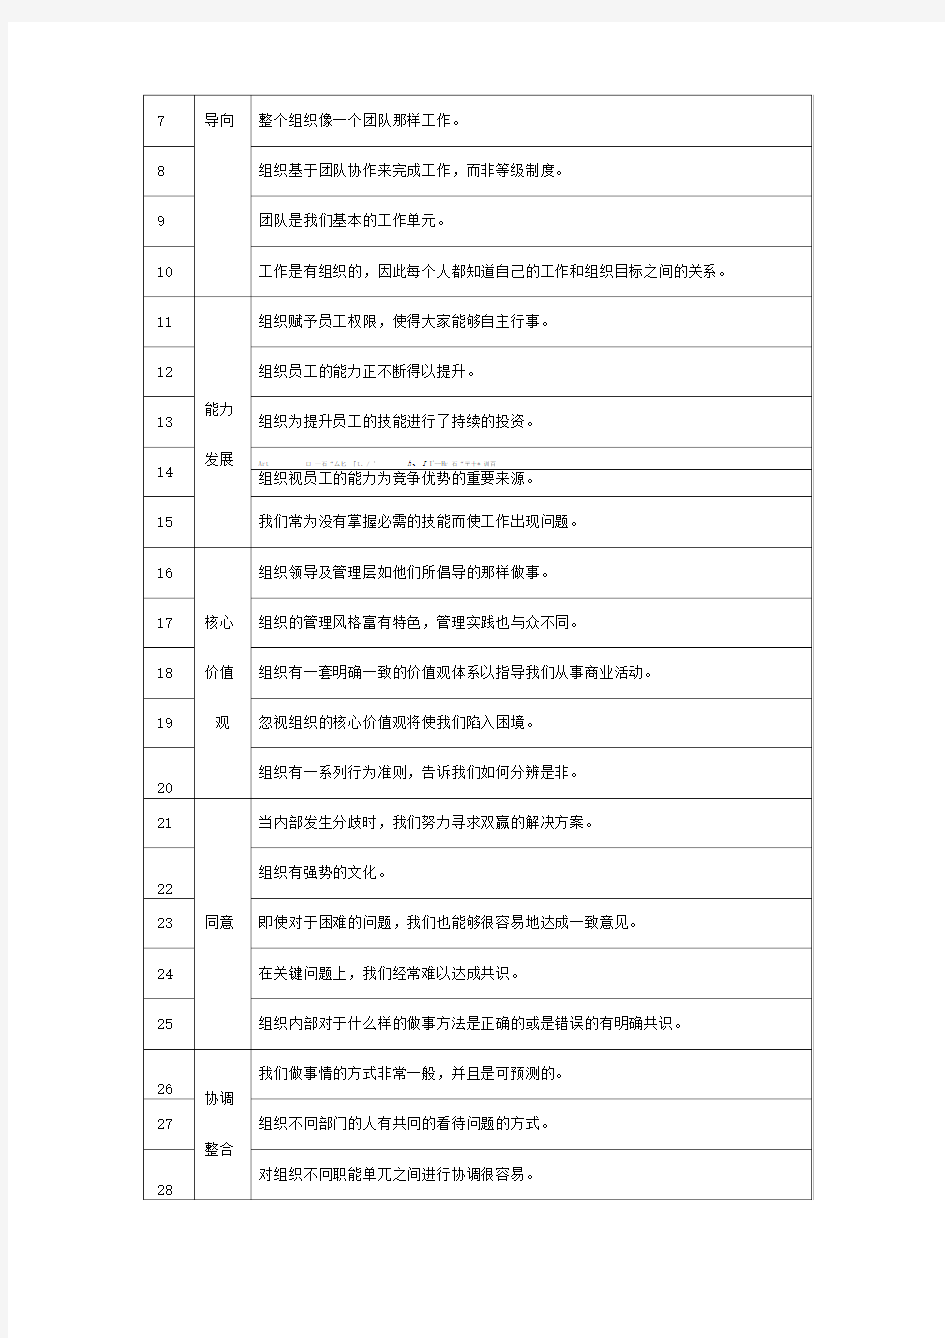 Denison企业文化量表(中文版)